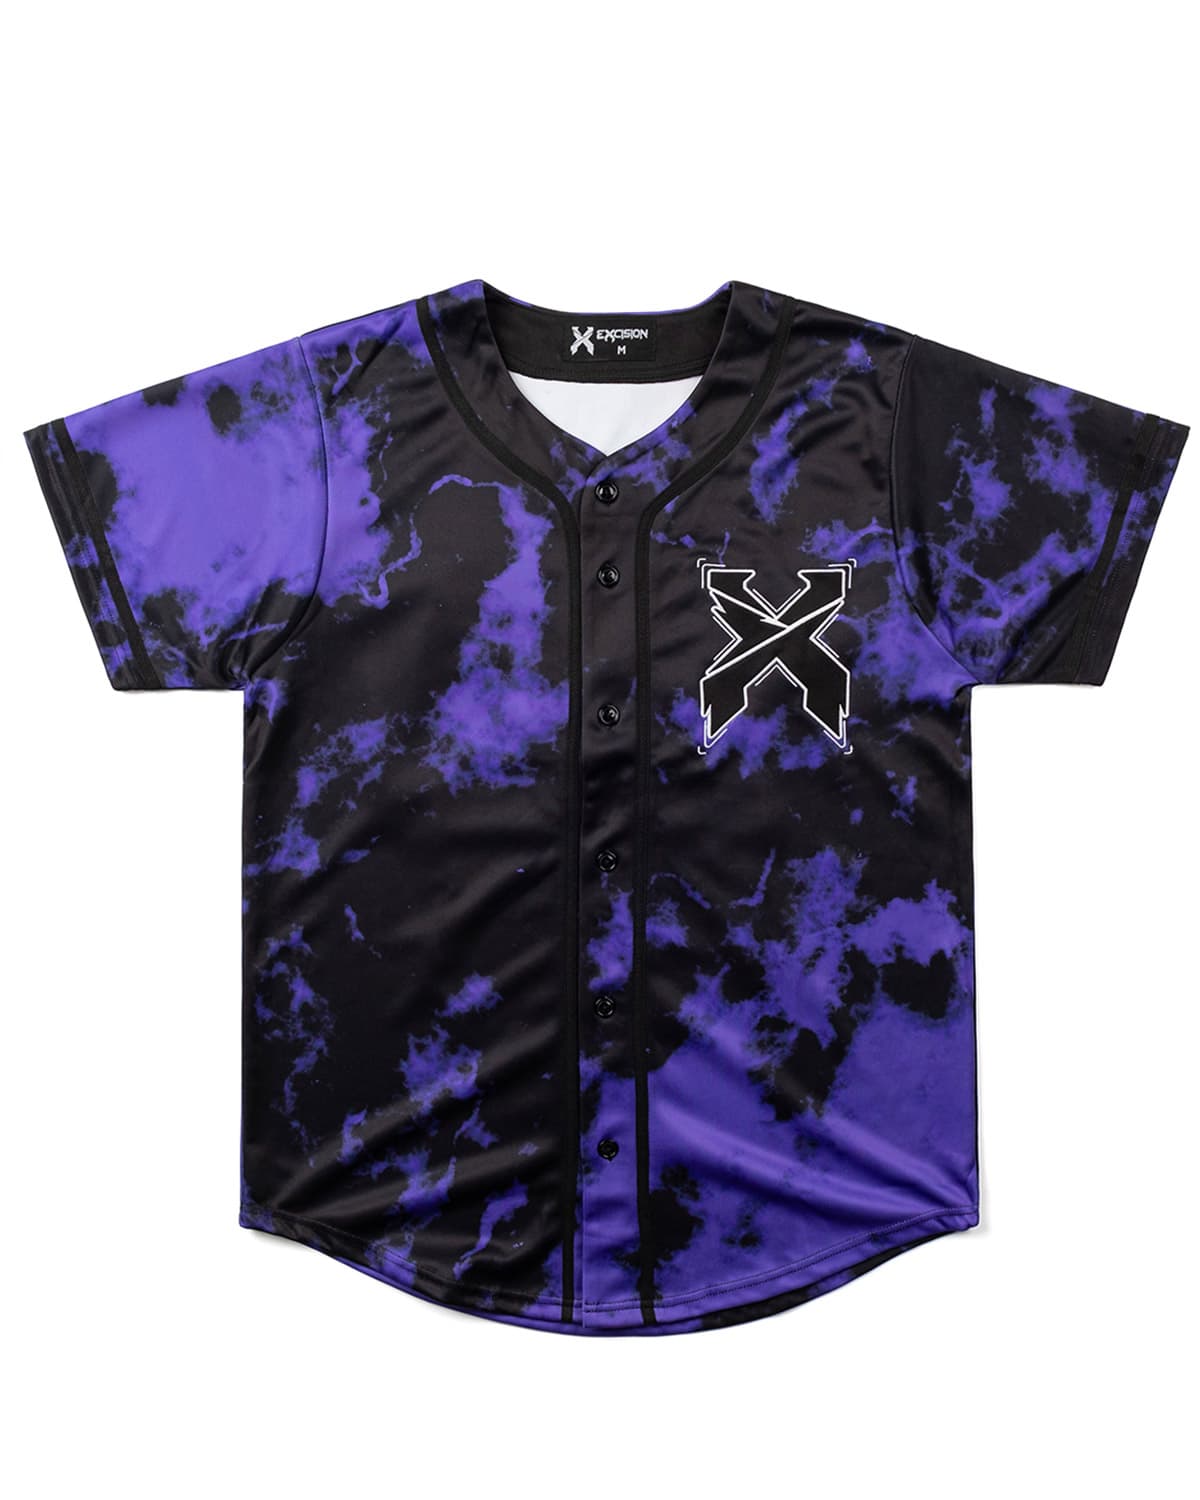 Headbanger Tie Dye Baseball Jersey (Purple)